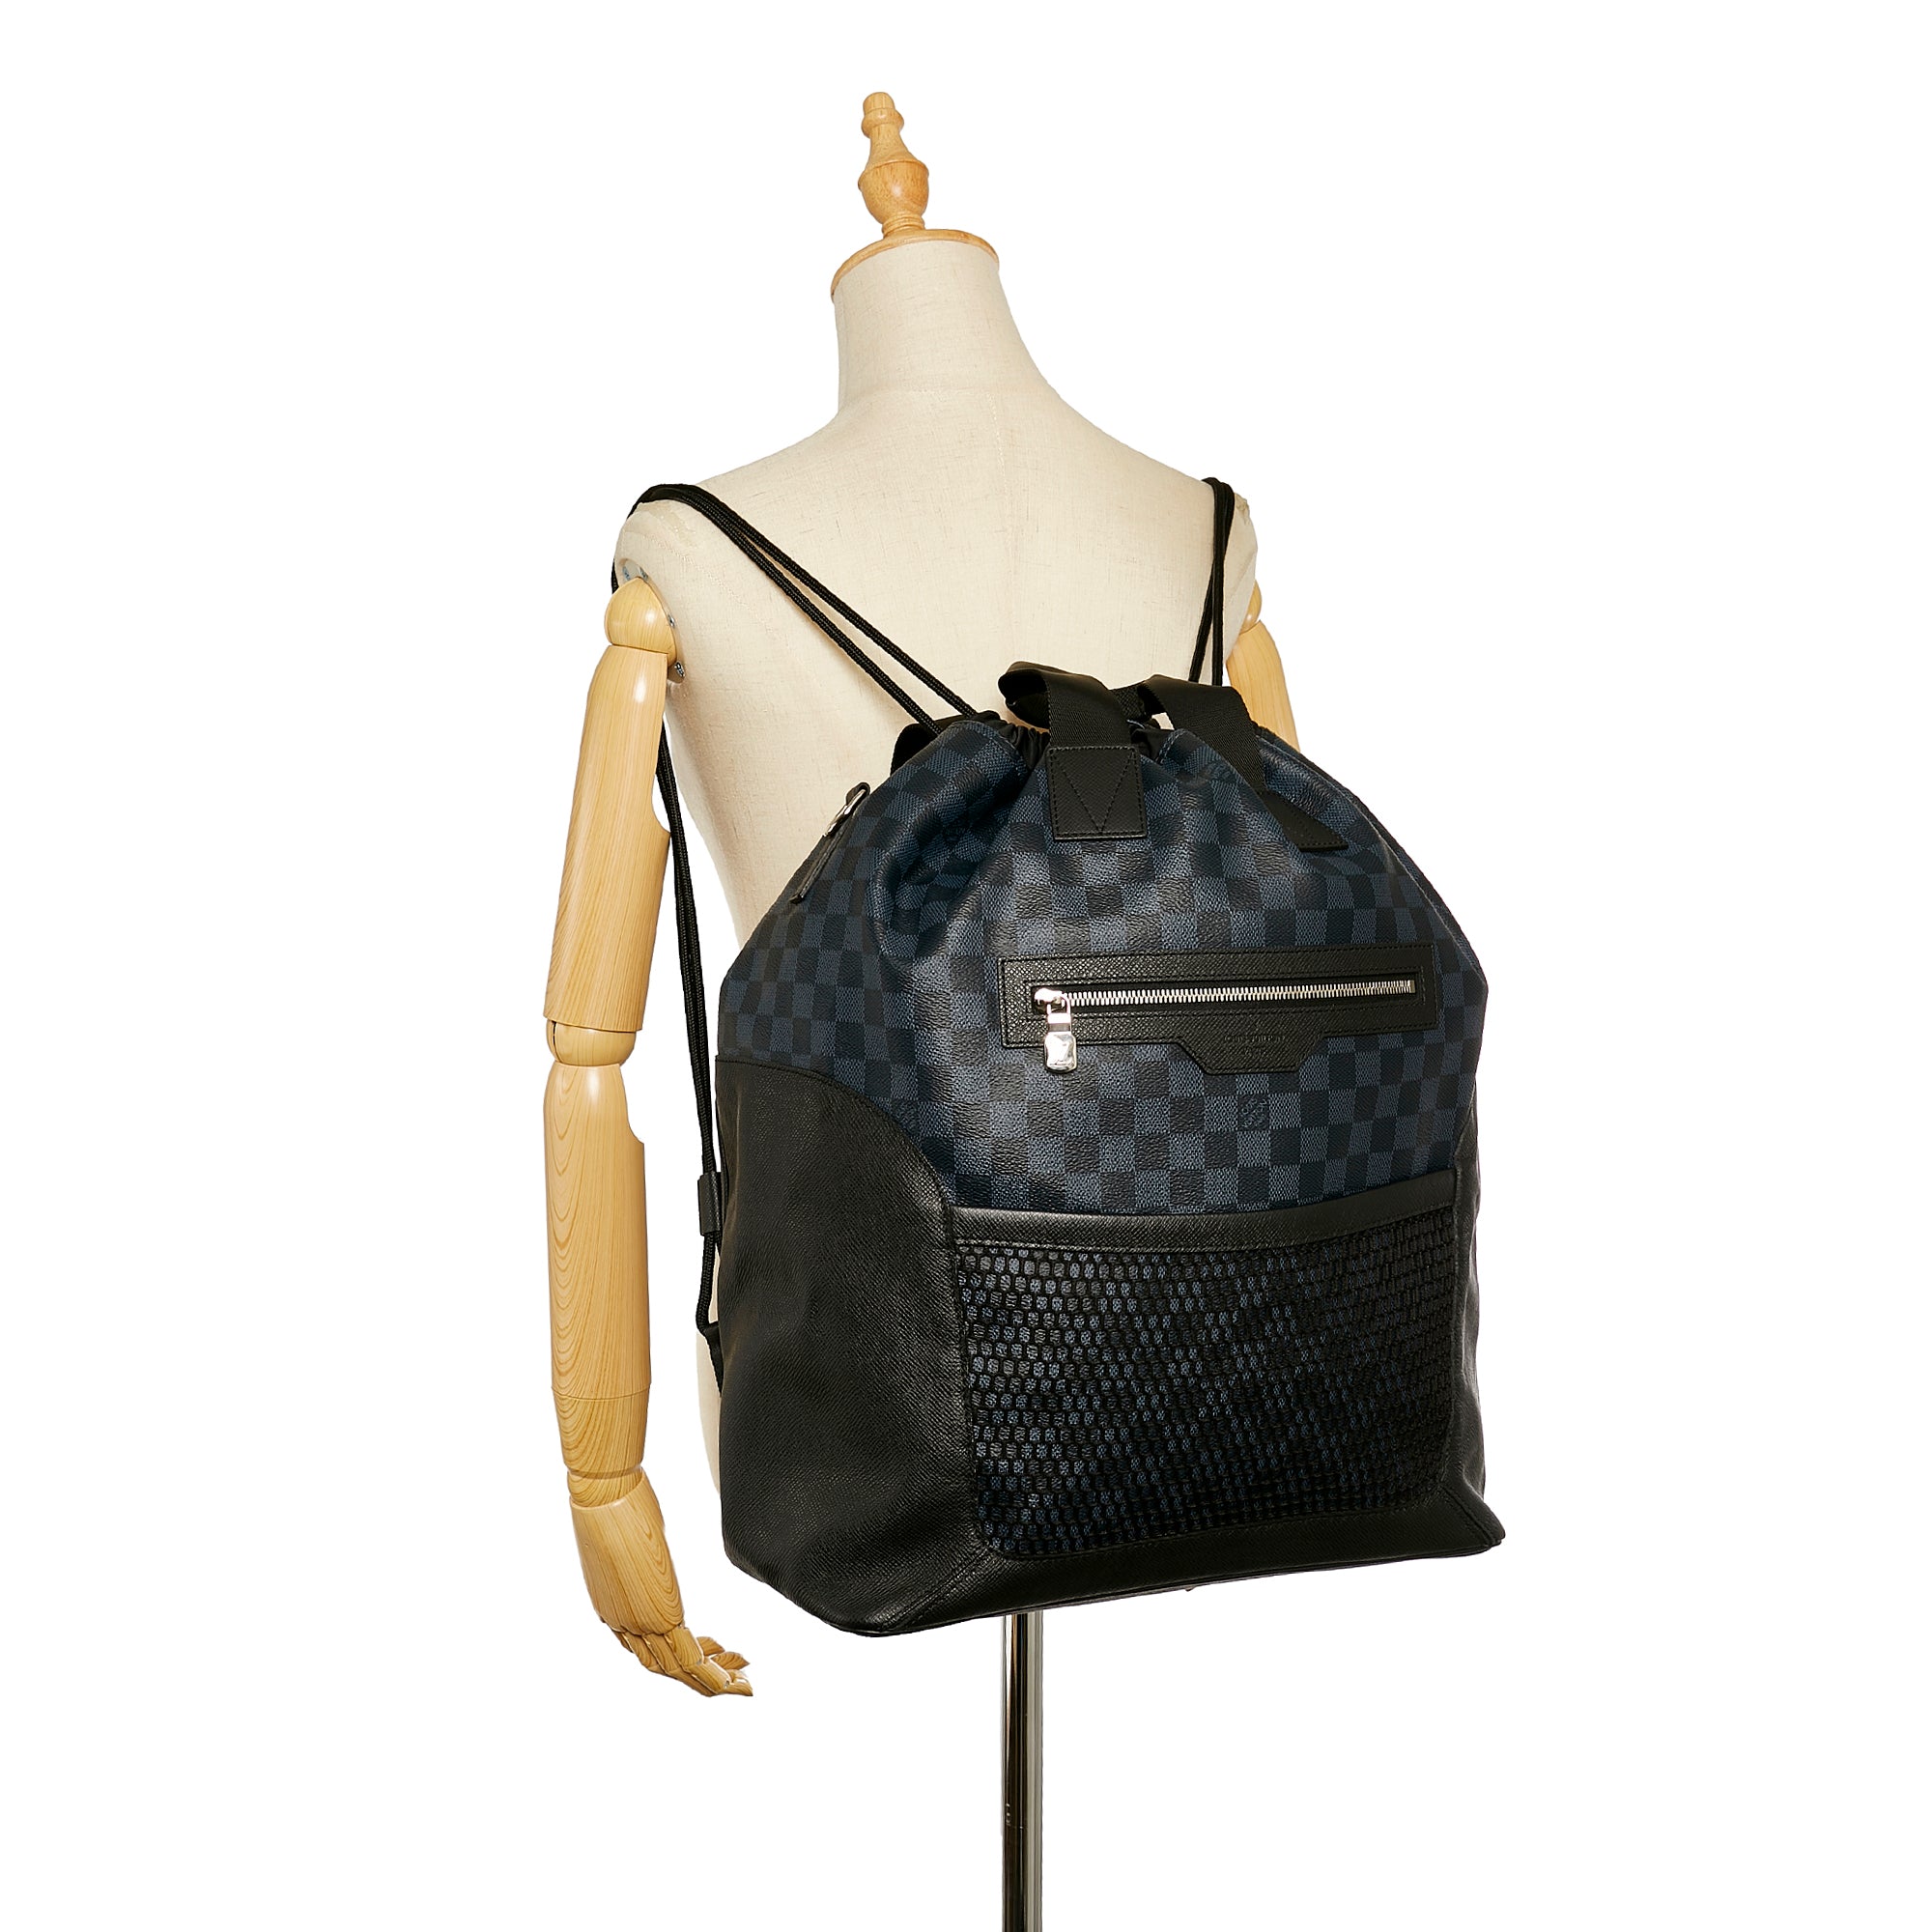 Sell Louis Vuitton Damier Matchpoint Messenger Bag